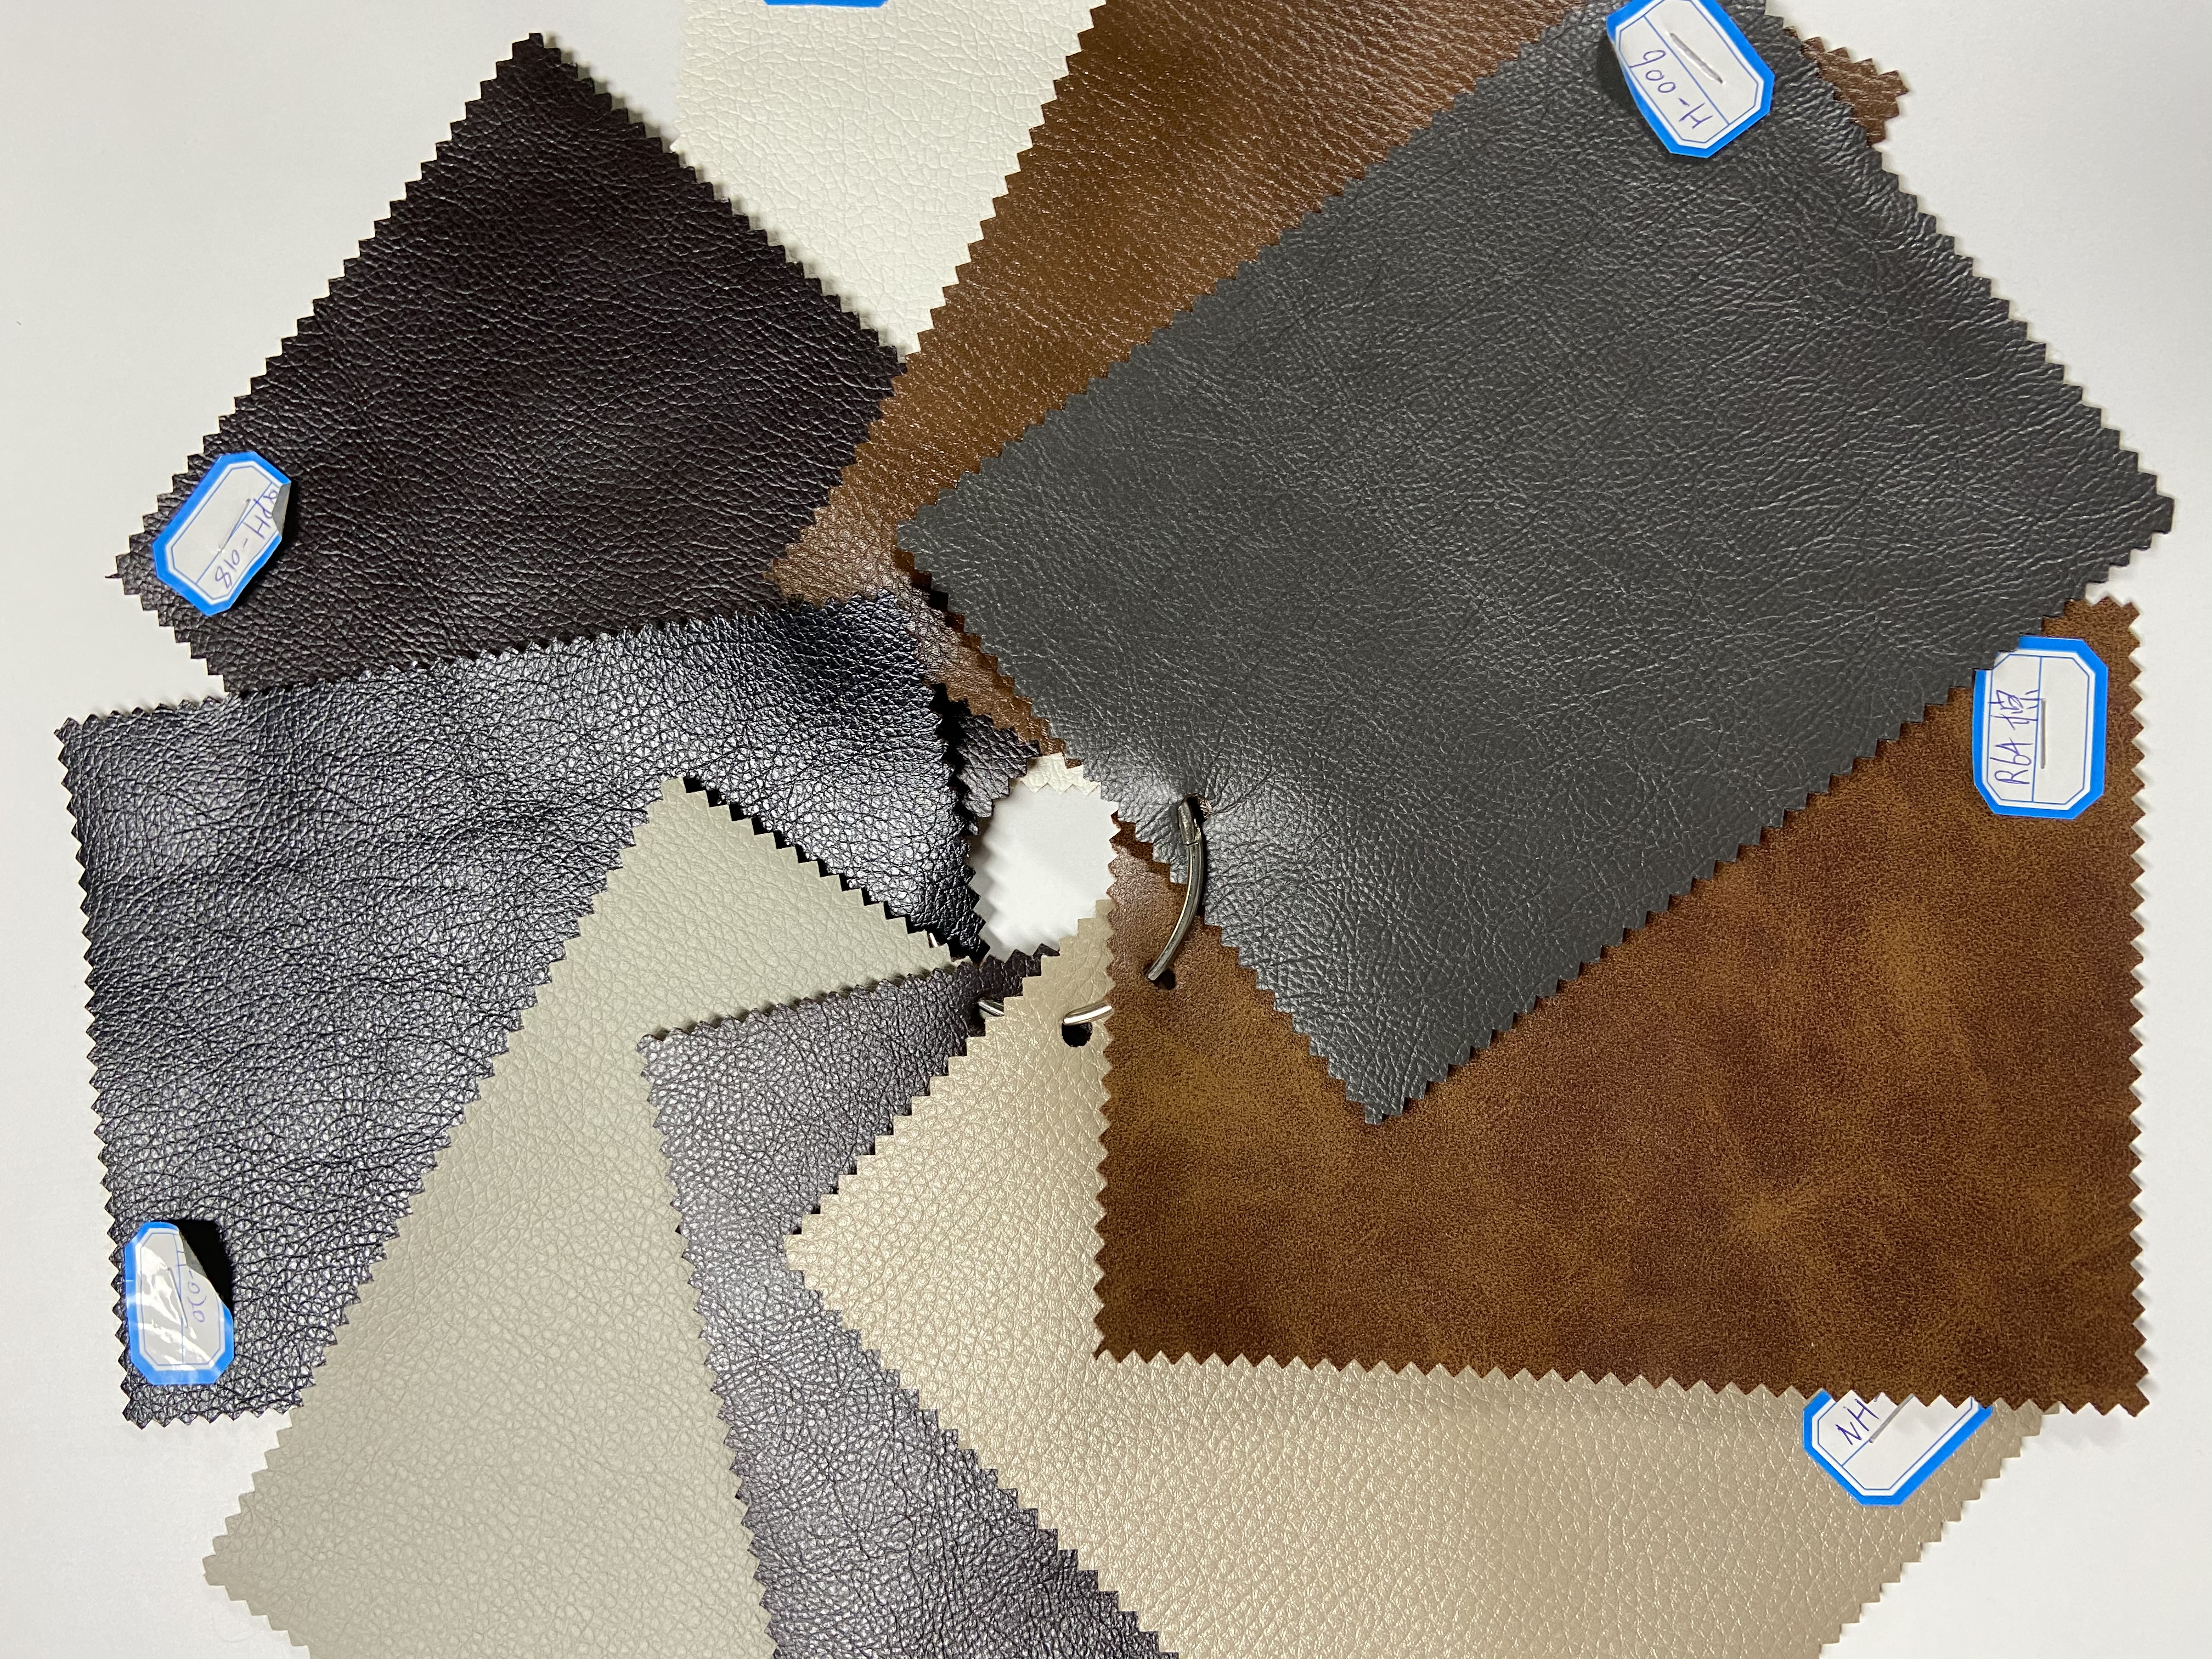 JKY тавилга нь таны сонголтоор бүх төрлийн материаллаг даавууны өнгөний загварыг нийлүүлдэг